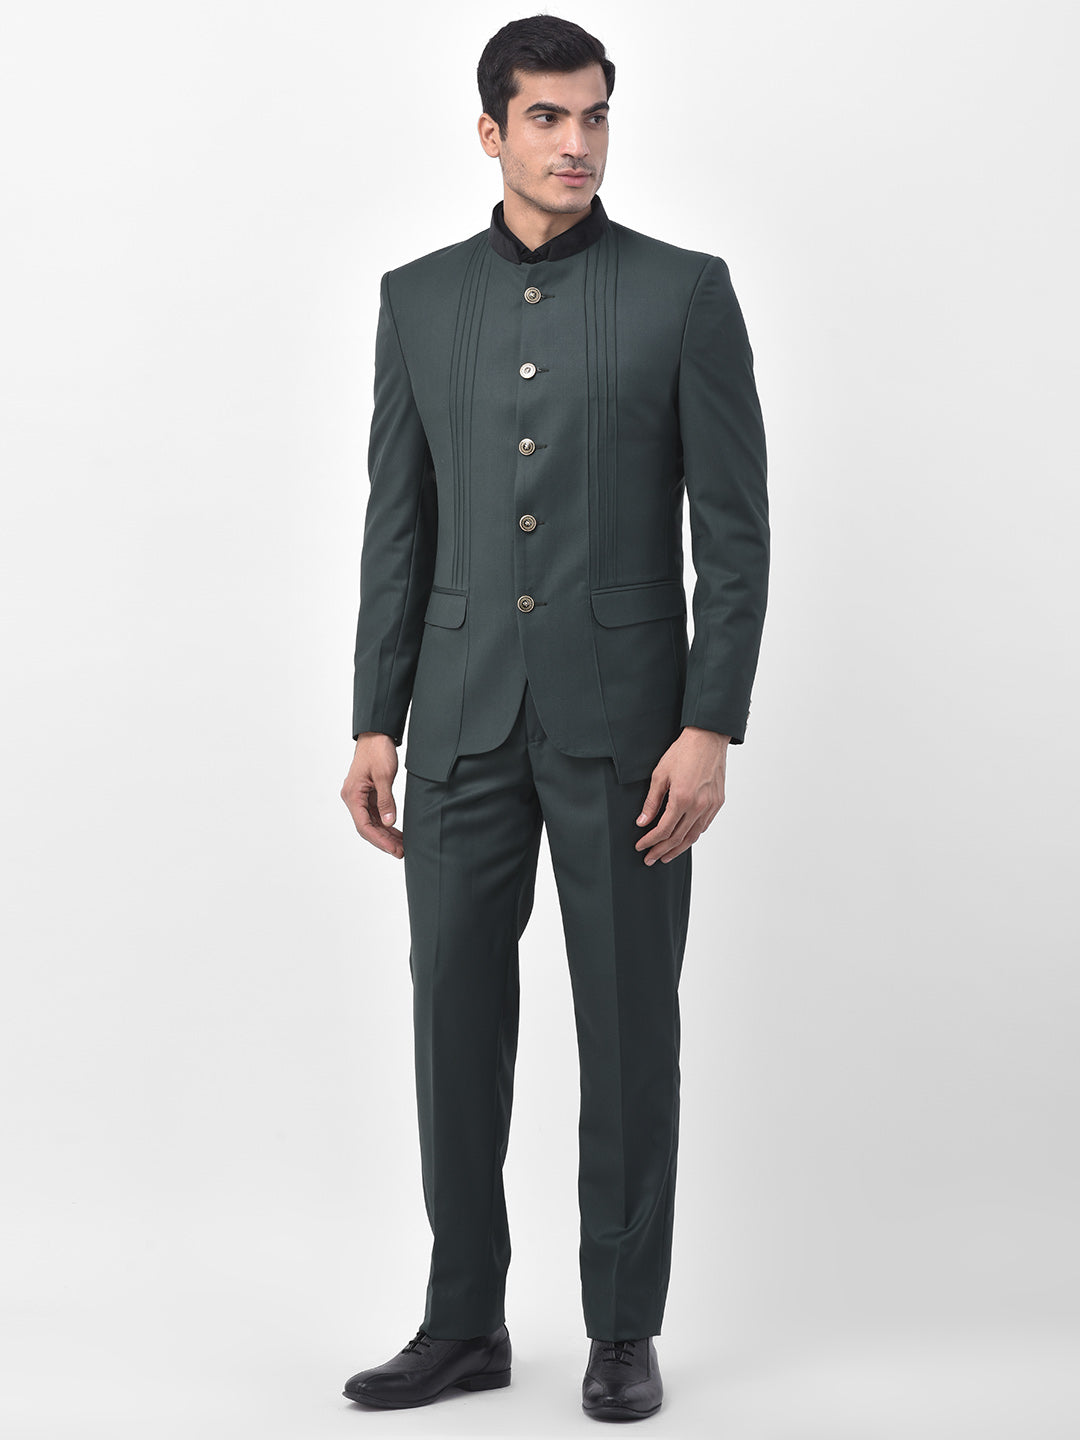 Green Velvet Indian Ethnic Stylish Jodhpuri Suit for Men, Mandarin Suit for  Men, Jodhpuri Blazer for Wedding, Velvet Bandhgala Suit for Men - Etsy  Norway